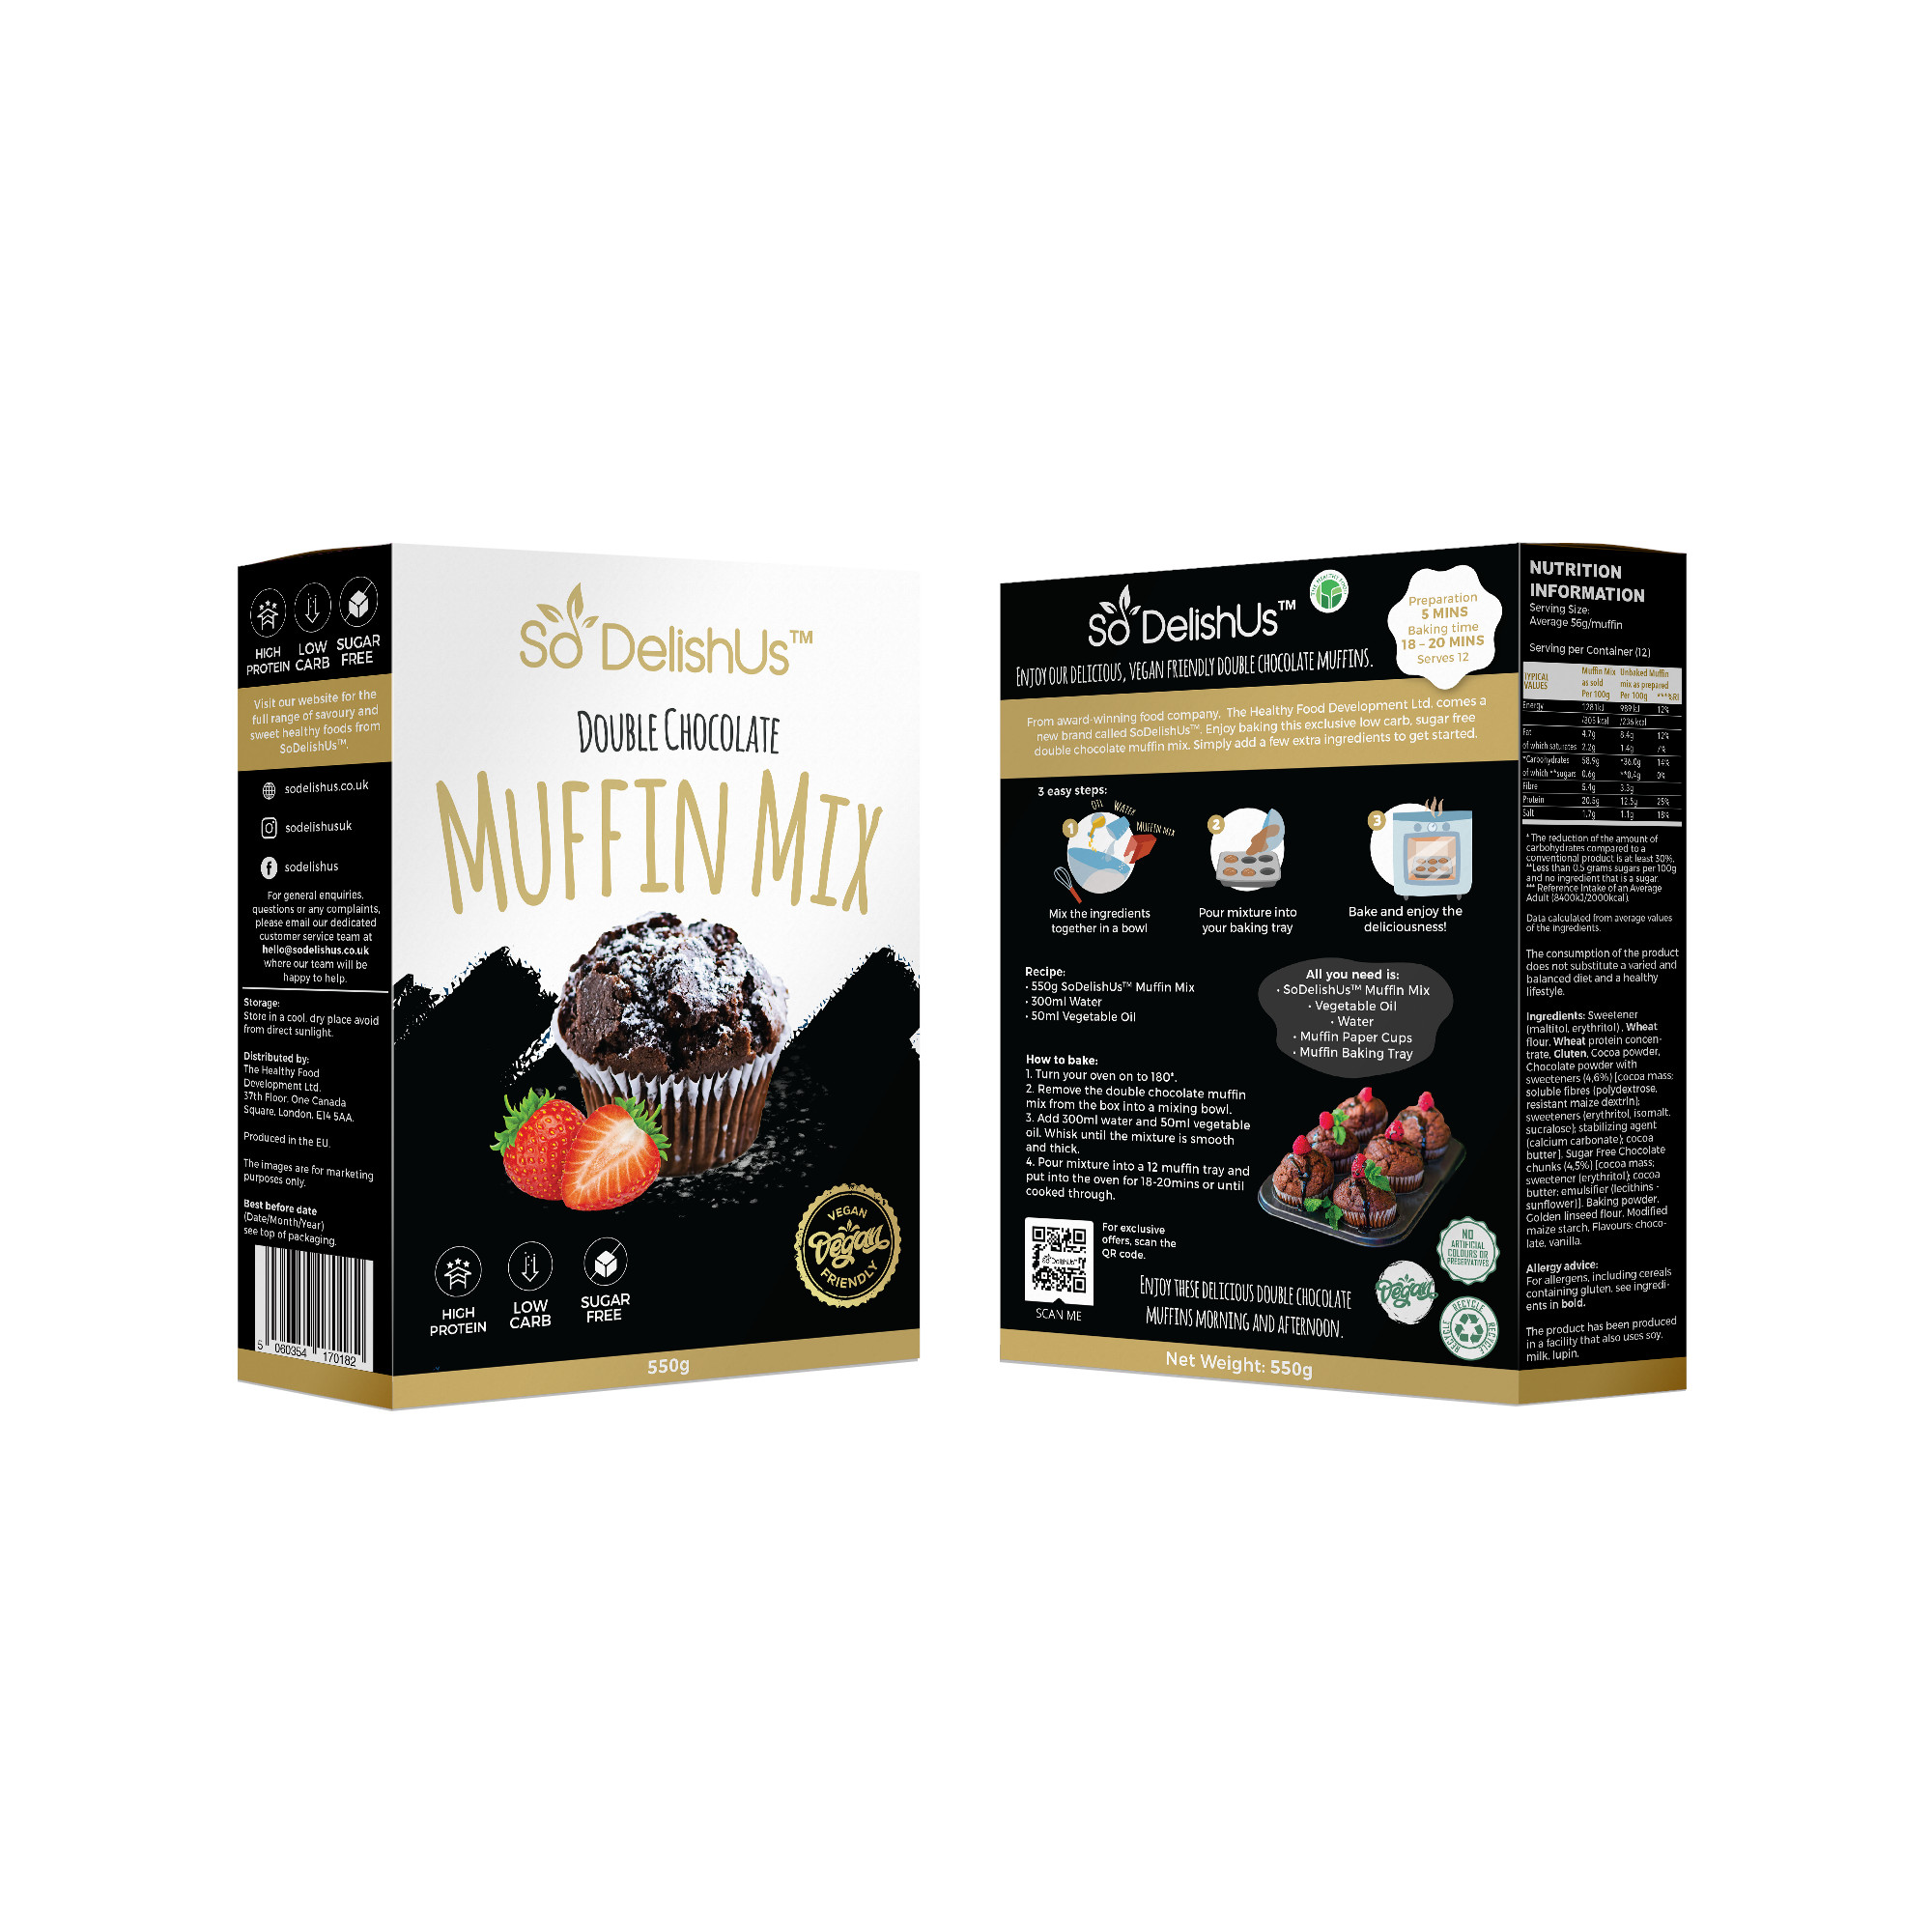 SoDelishUs szénhidrátcsökkentett dupla csokis muffin mix 550g/ AKCIÓ! -10% kedvezménnyel kapható Április hónapban!